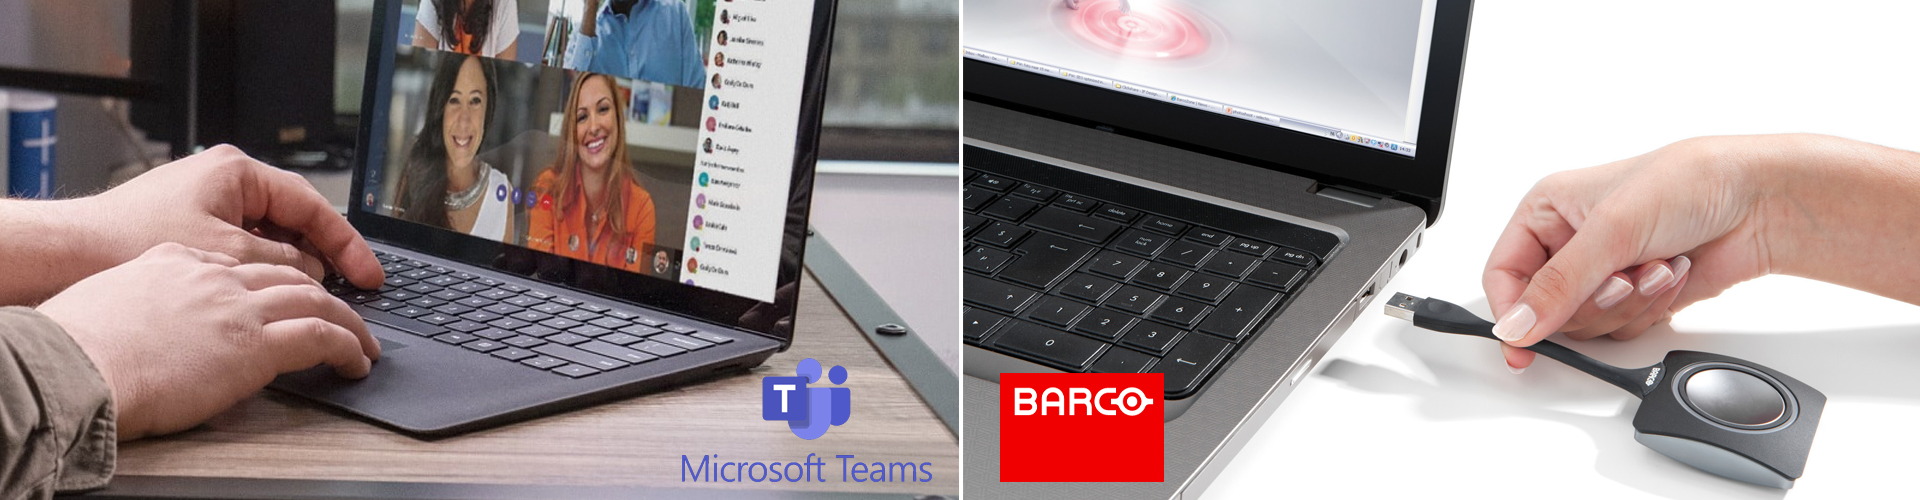 Giải pháp Tích hợp giữa Barco ClickShare và Microsoft Teams